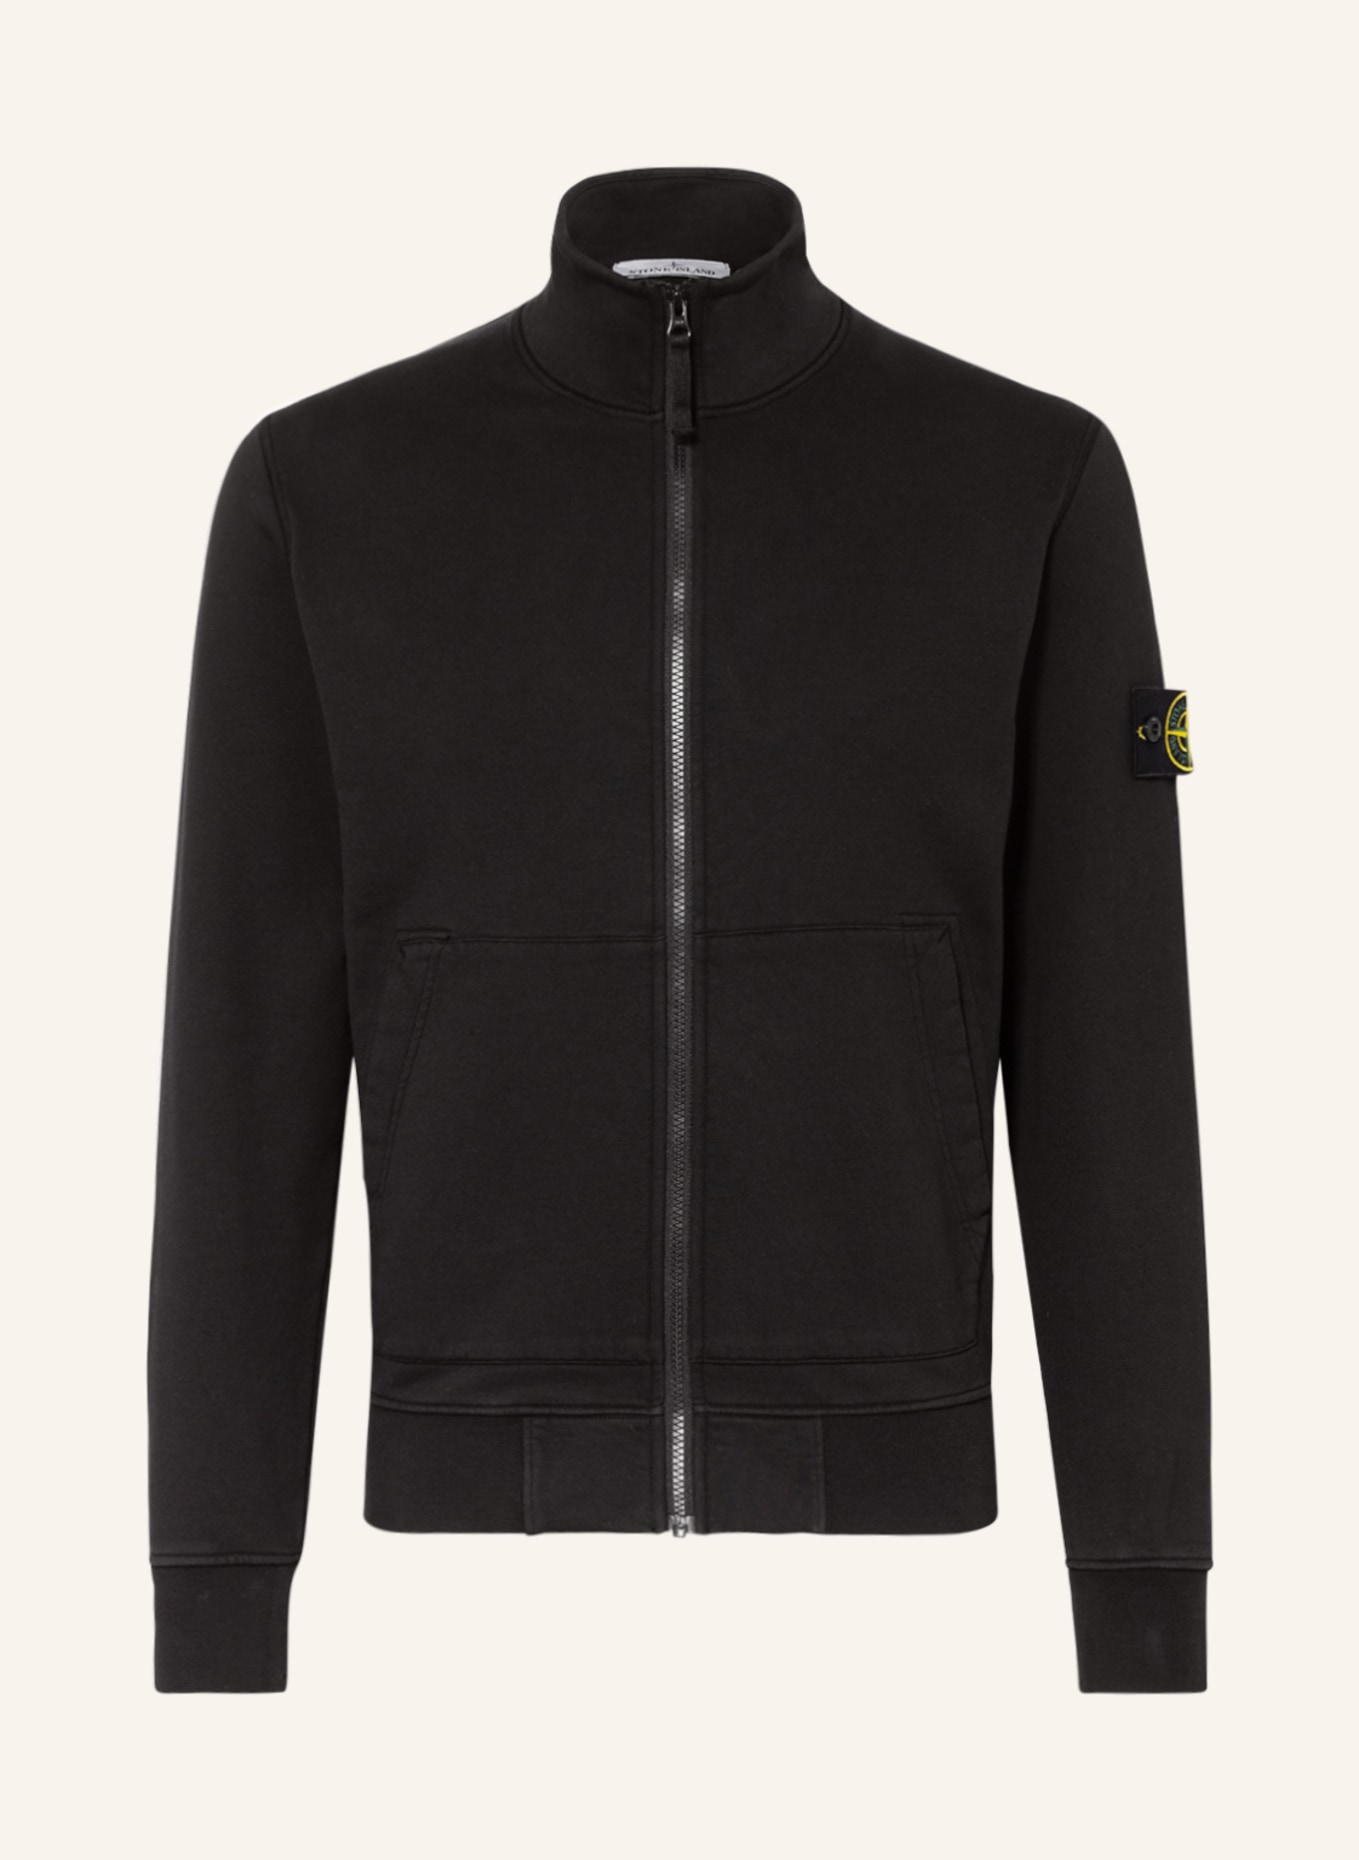 STONE ISLAND Sweat jacket, Color: BLACK (Image 1)